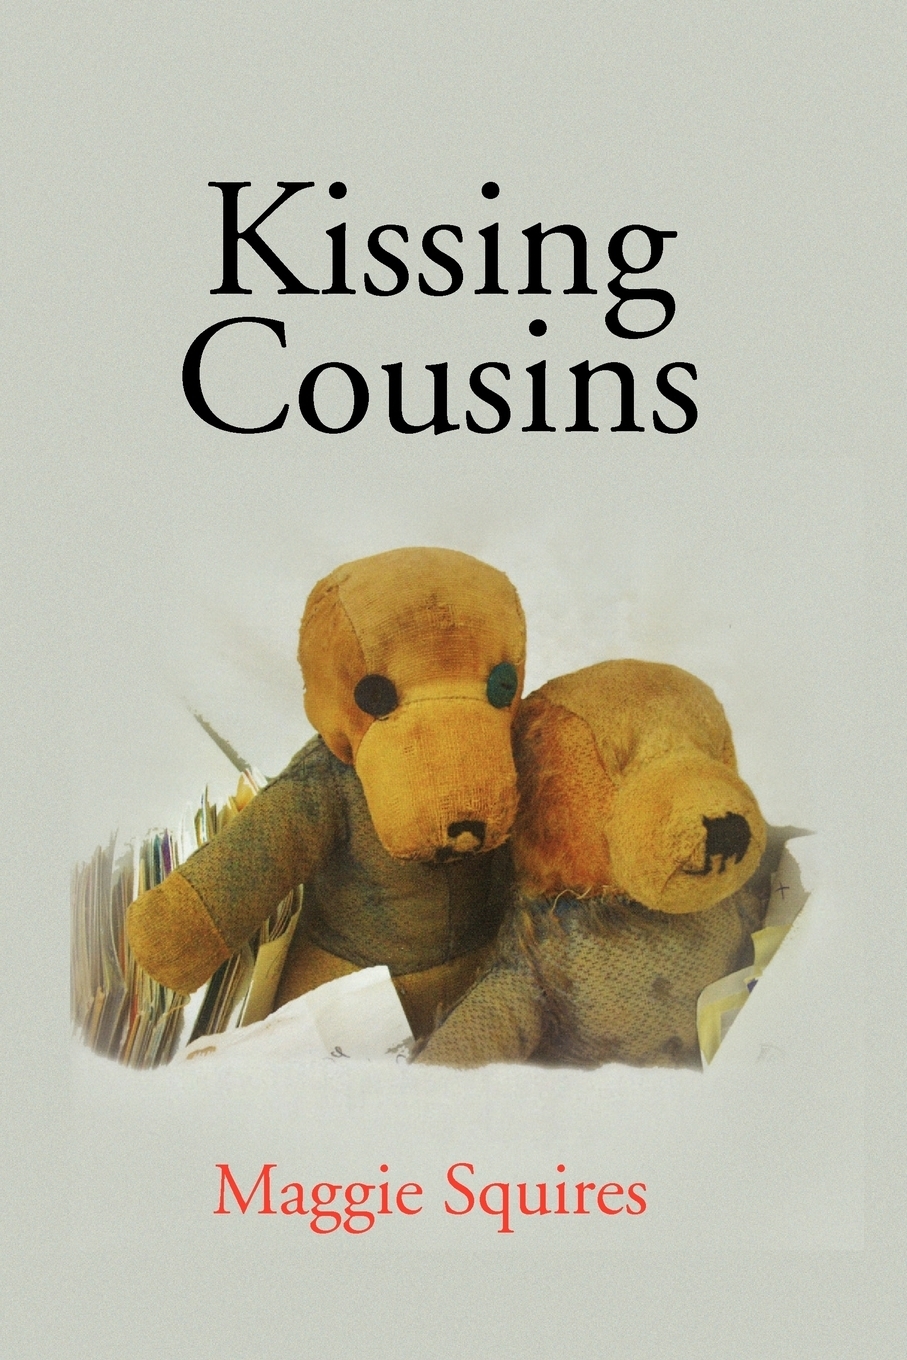 Книга "Kissing Cousins" - купить книгу ISBN 9781441533562 с быстр...